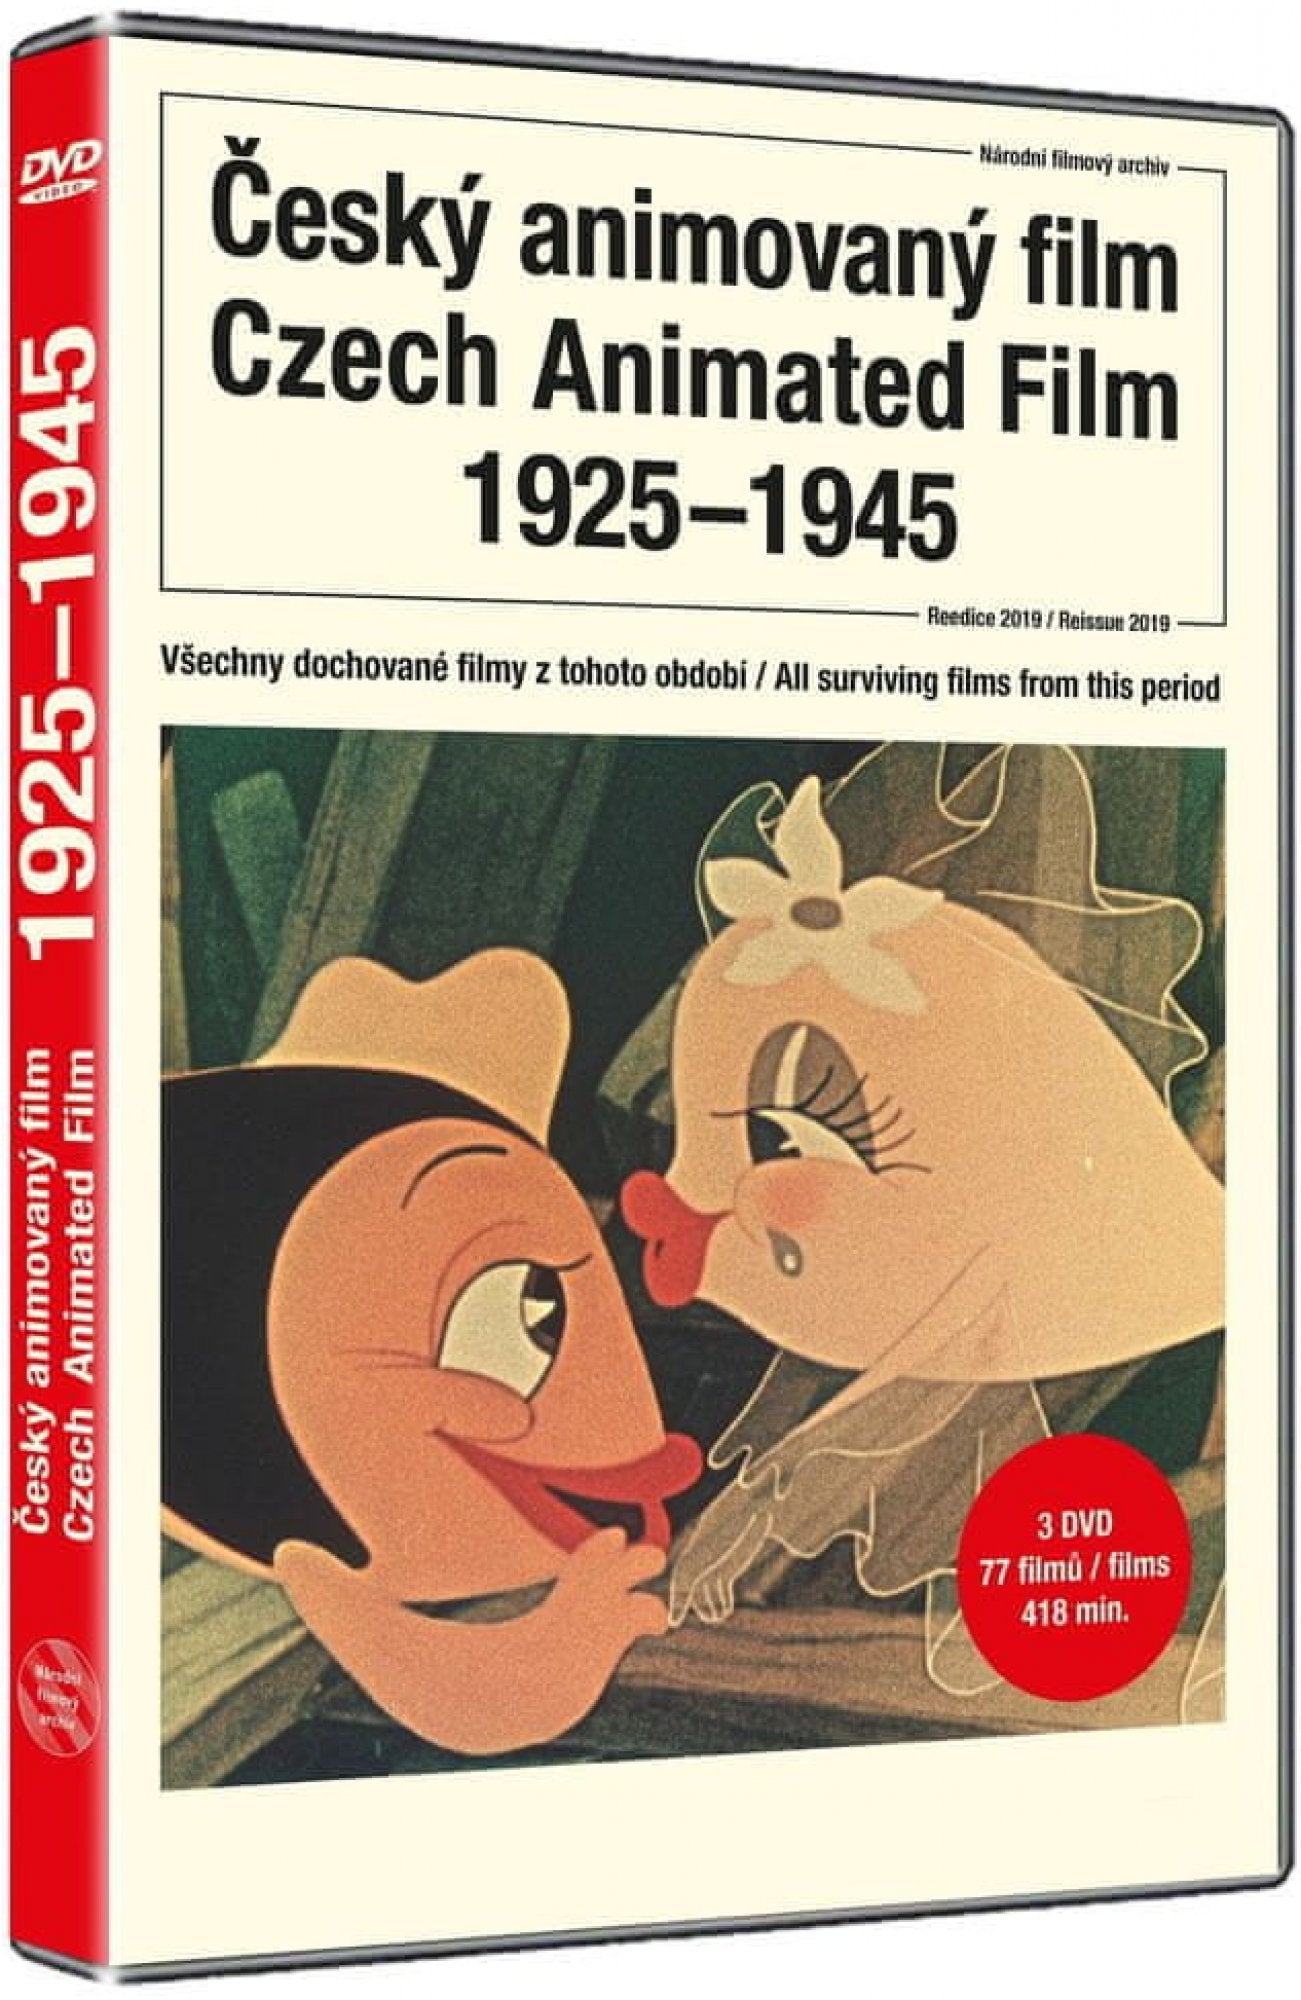 Tschechischer Animationsfilm / Cesky-Animationsfilm 1925-1945 DVD